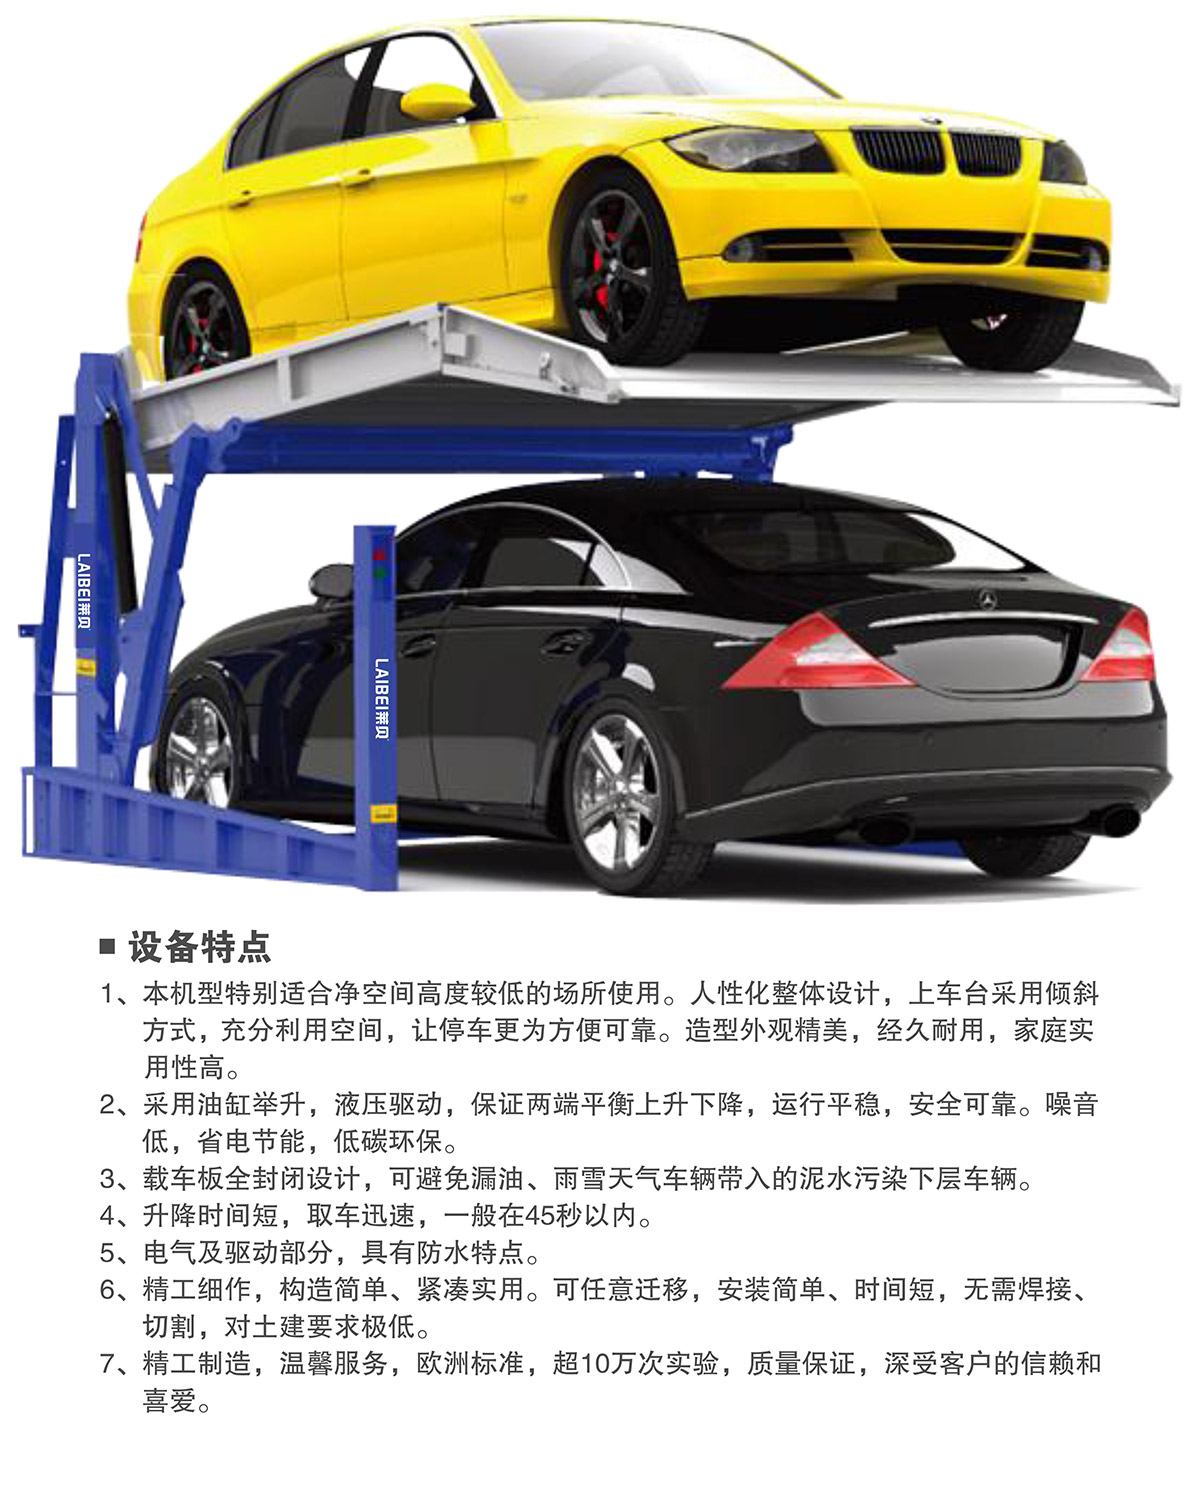 重庆俯仰式简易升降立体停车设备特点.jpg